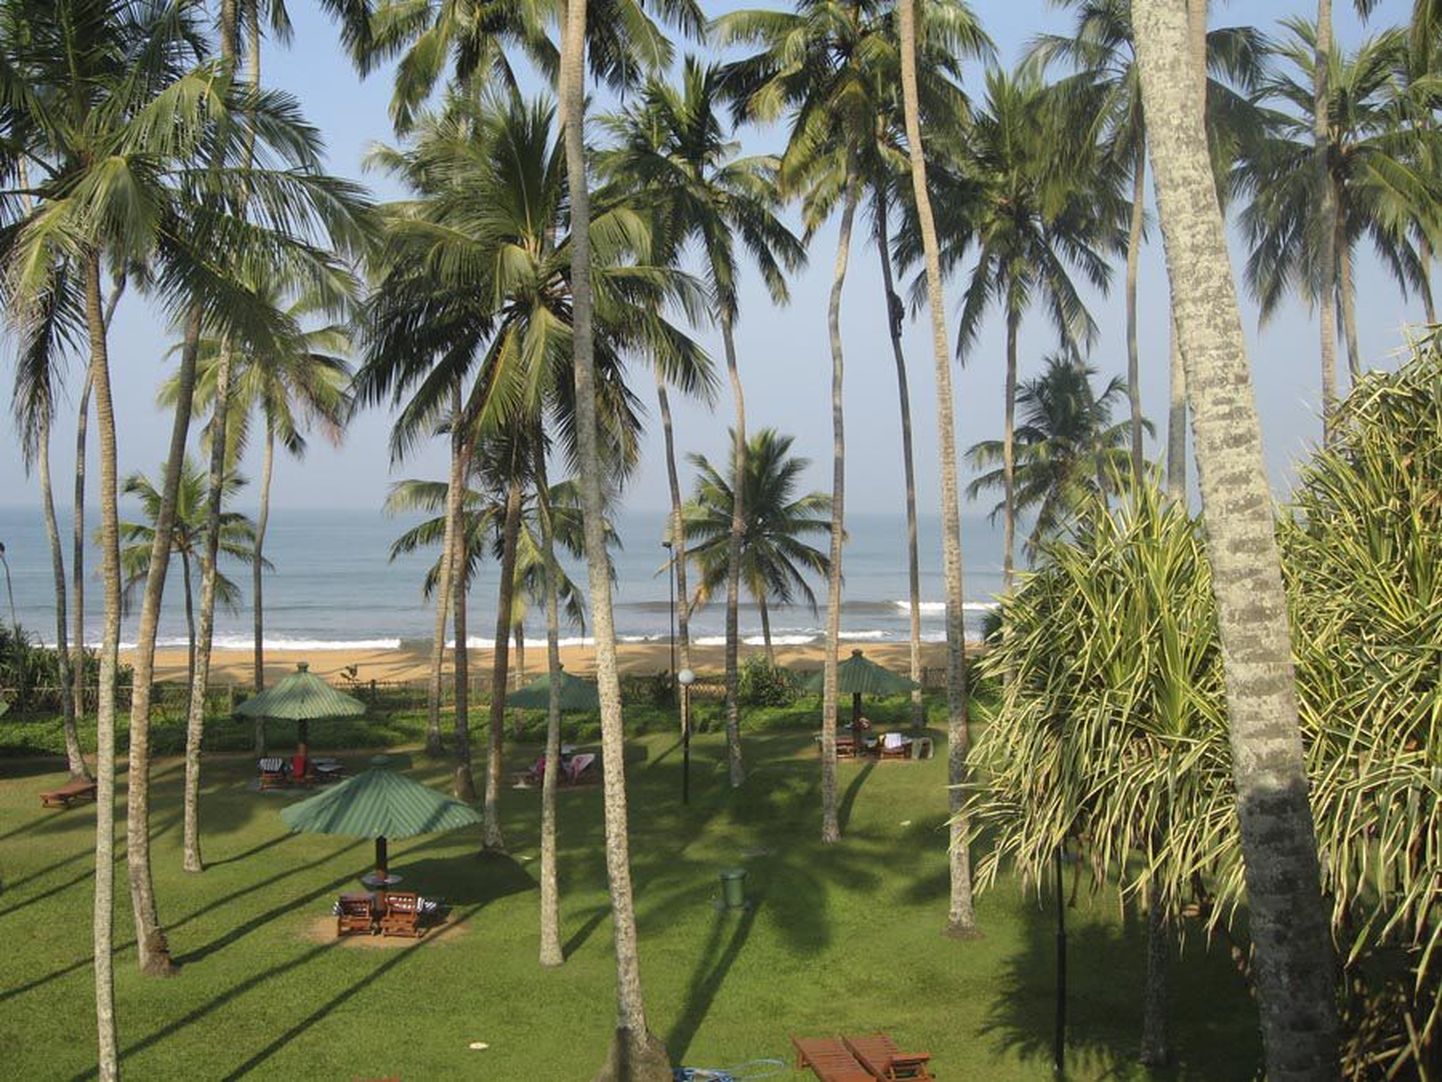 Tangerine Beach. Hotellitoa aknast avanes vaimustav vaade kõrgetele kookospalmidele ning aia taga mühavale India ookeanile. Paremal näeb pikkade õhujuurtega mangroovipuud.